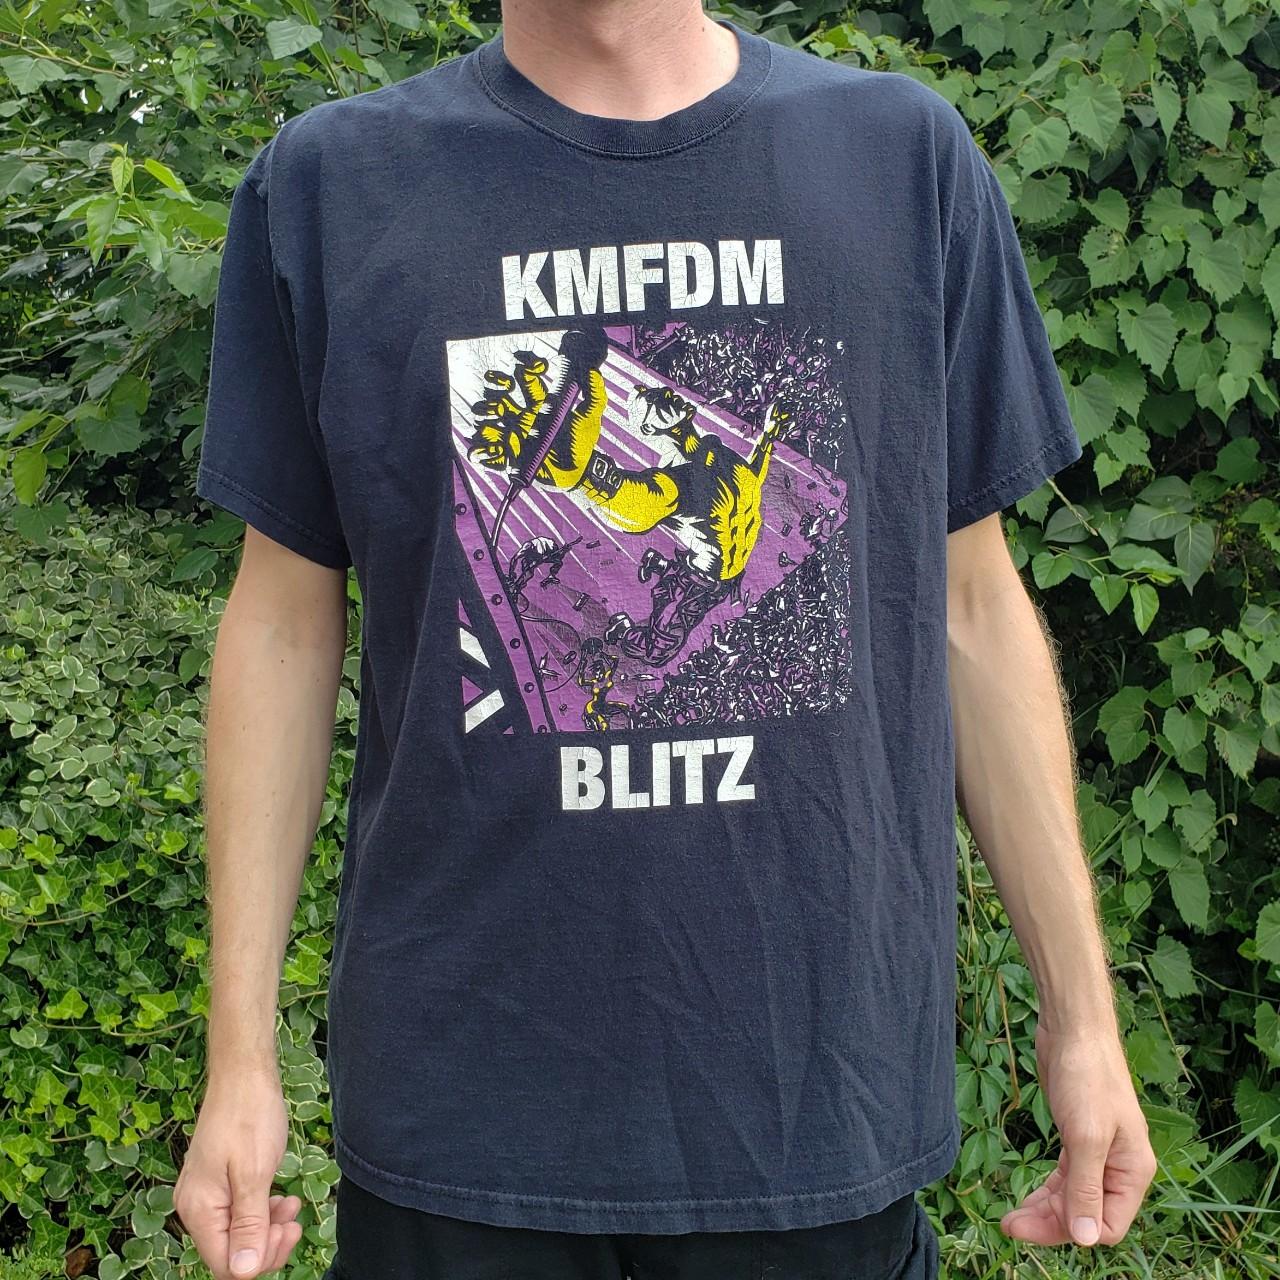 💸 PRICE CUT 💸 KMFDM Blitz / Full Blown Chaos... - Depop